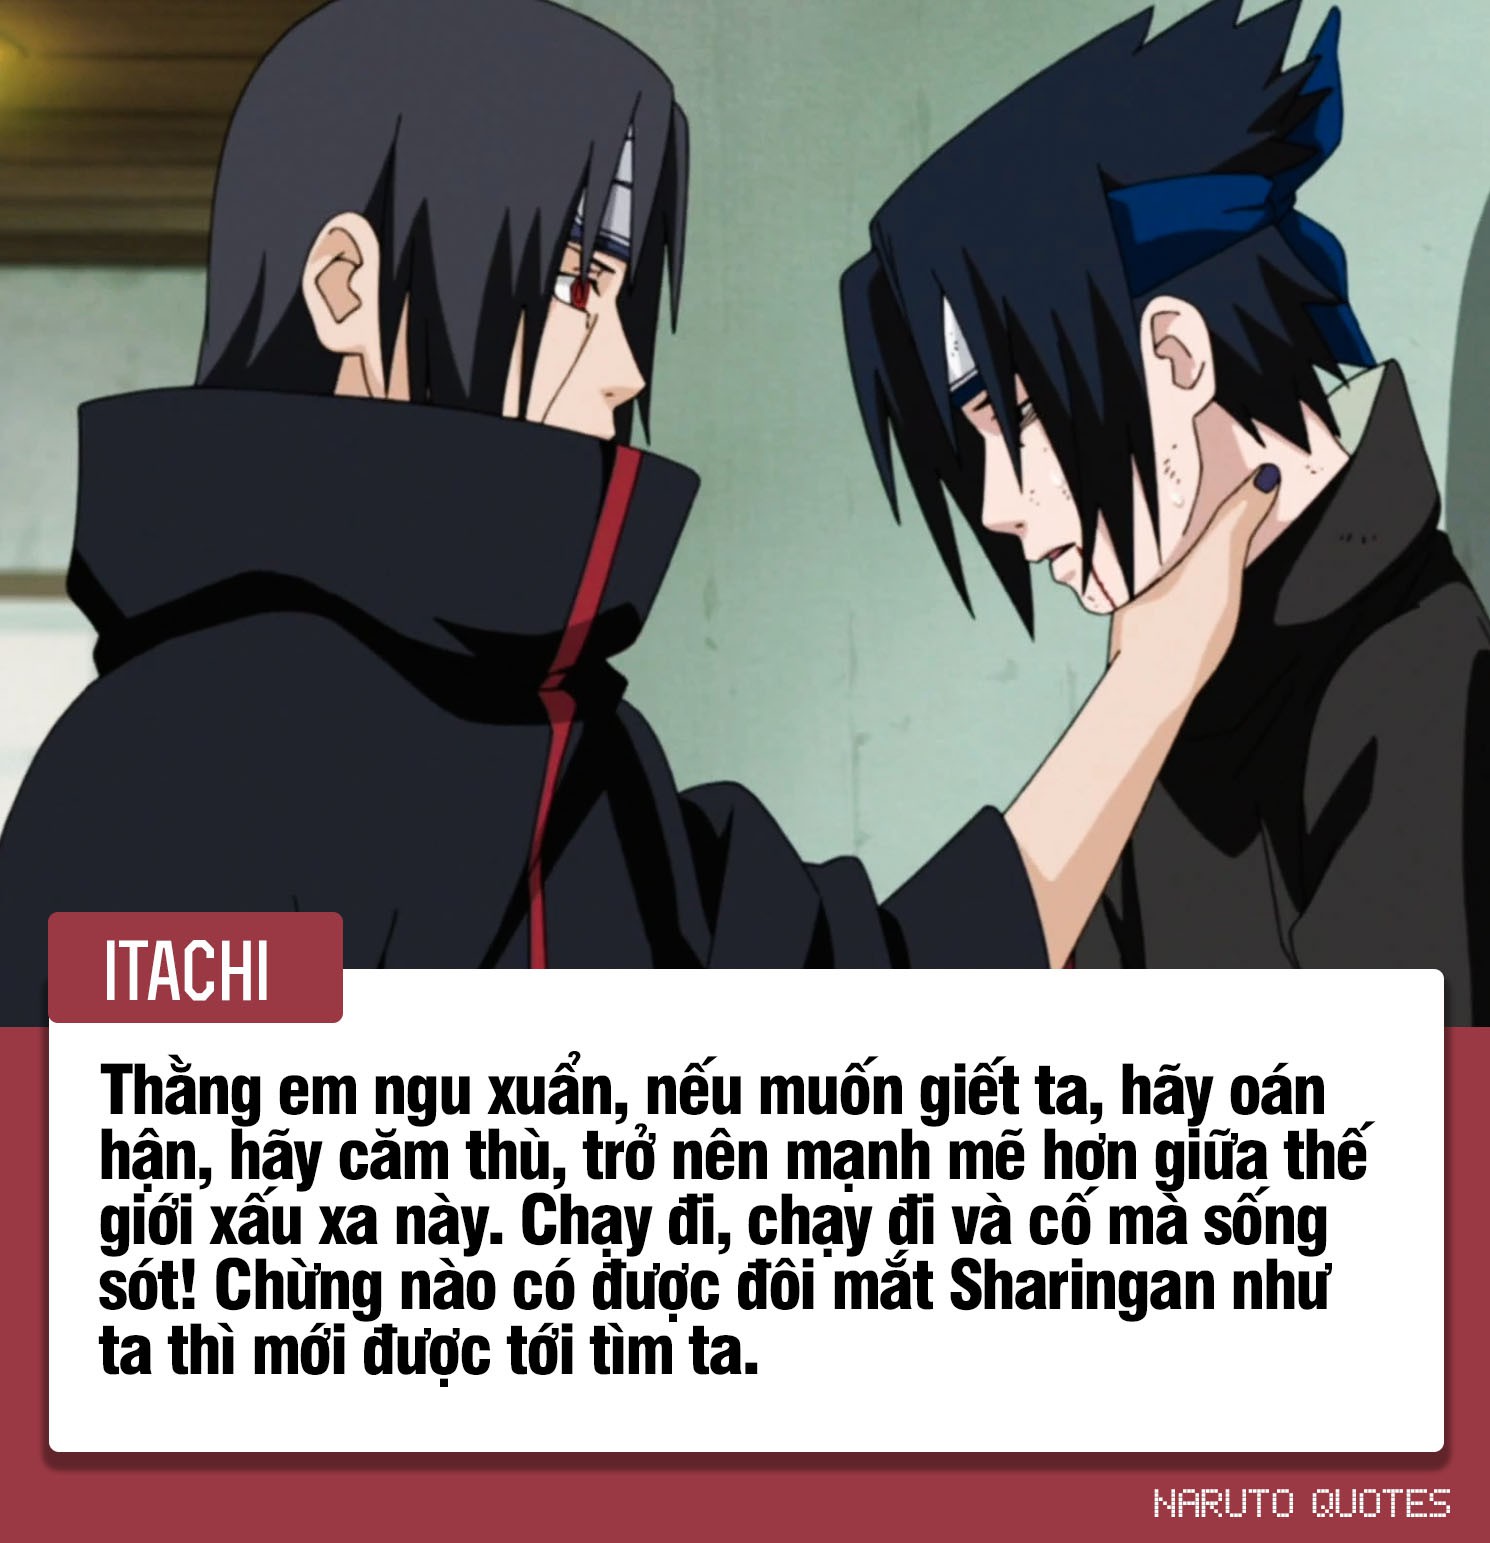 10 câu nói ý nghĩa của các nhân vật trong Naruto, câu thứ 3 sẽ là động lực giúp nhiều người phấn đấu - Ảnh 5.